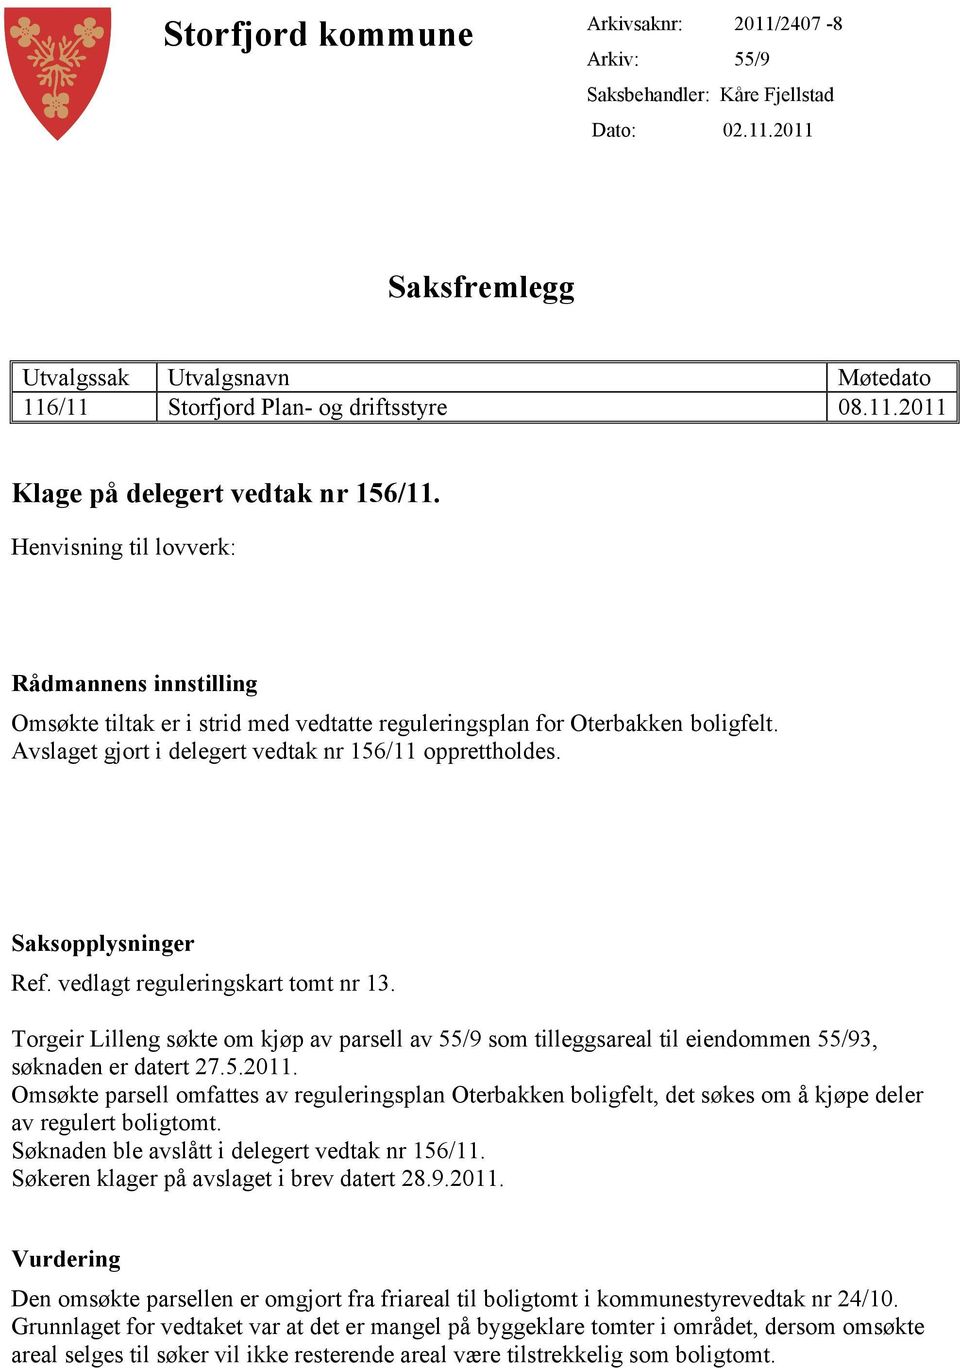 Saksopplysninger Ref. vedlagt reguleringskart tomt nr 13. Torgeir Lilleng søkte om kjøp av parsell av 55/9 som tilleggsareal til eiendommen 55/93, søknaden er datert 27.5.2011.